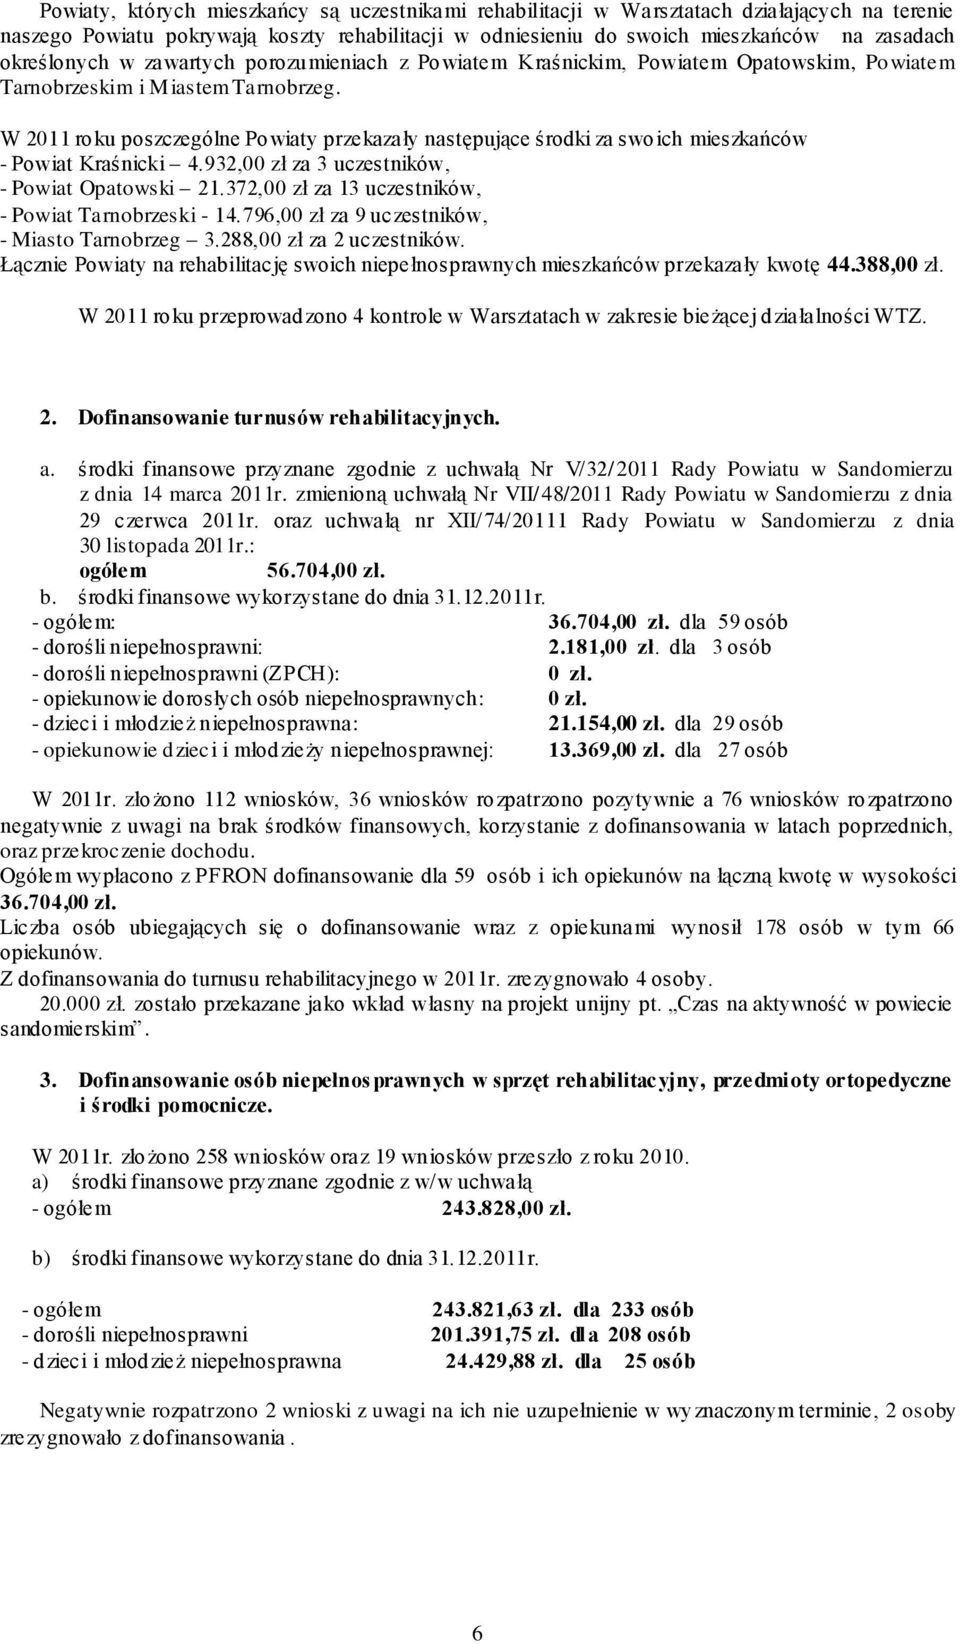 W 2011 roku poszczególne Powiaty przekazały następujące środki za swoich mieszkańców - Powiat Kraśnicki 4.932,00 zł za 3 uczestników, - Powiat Opatowski 21.